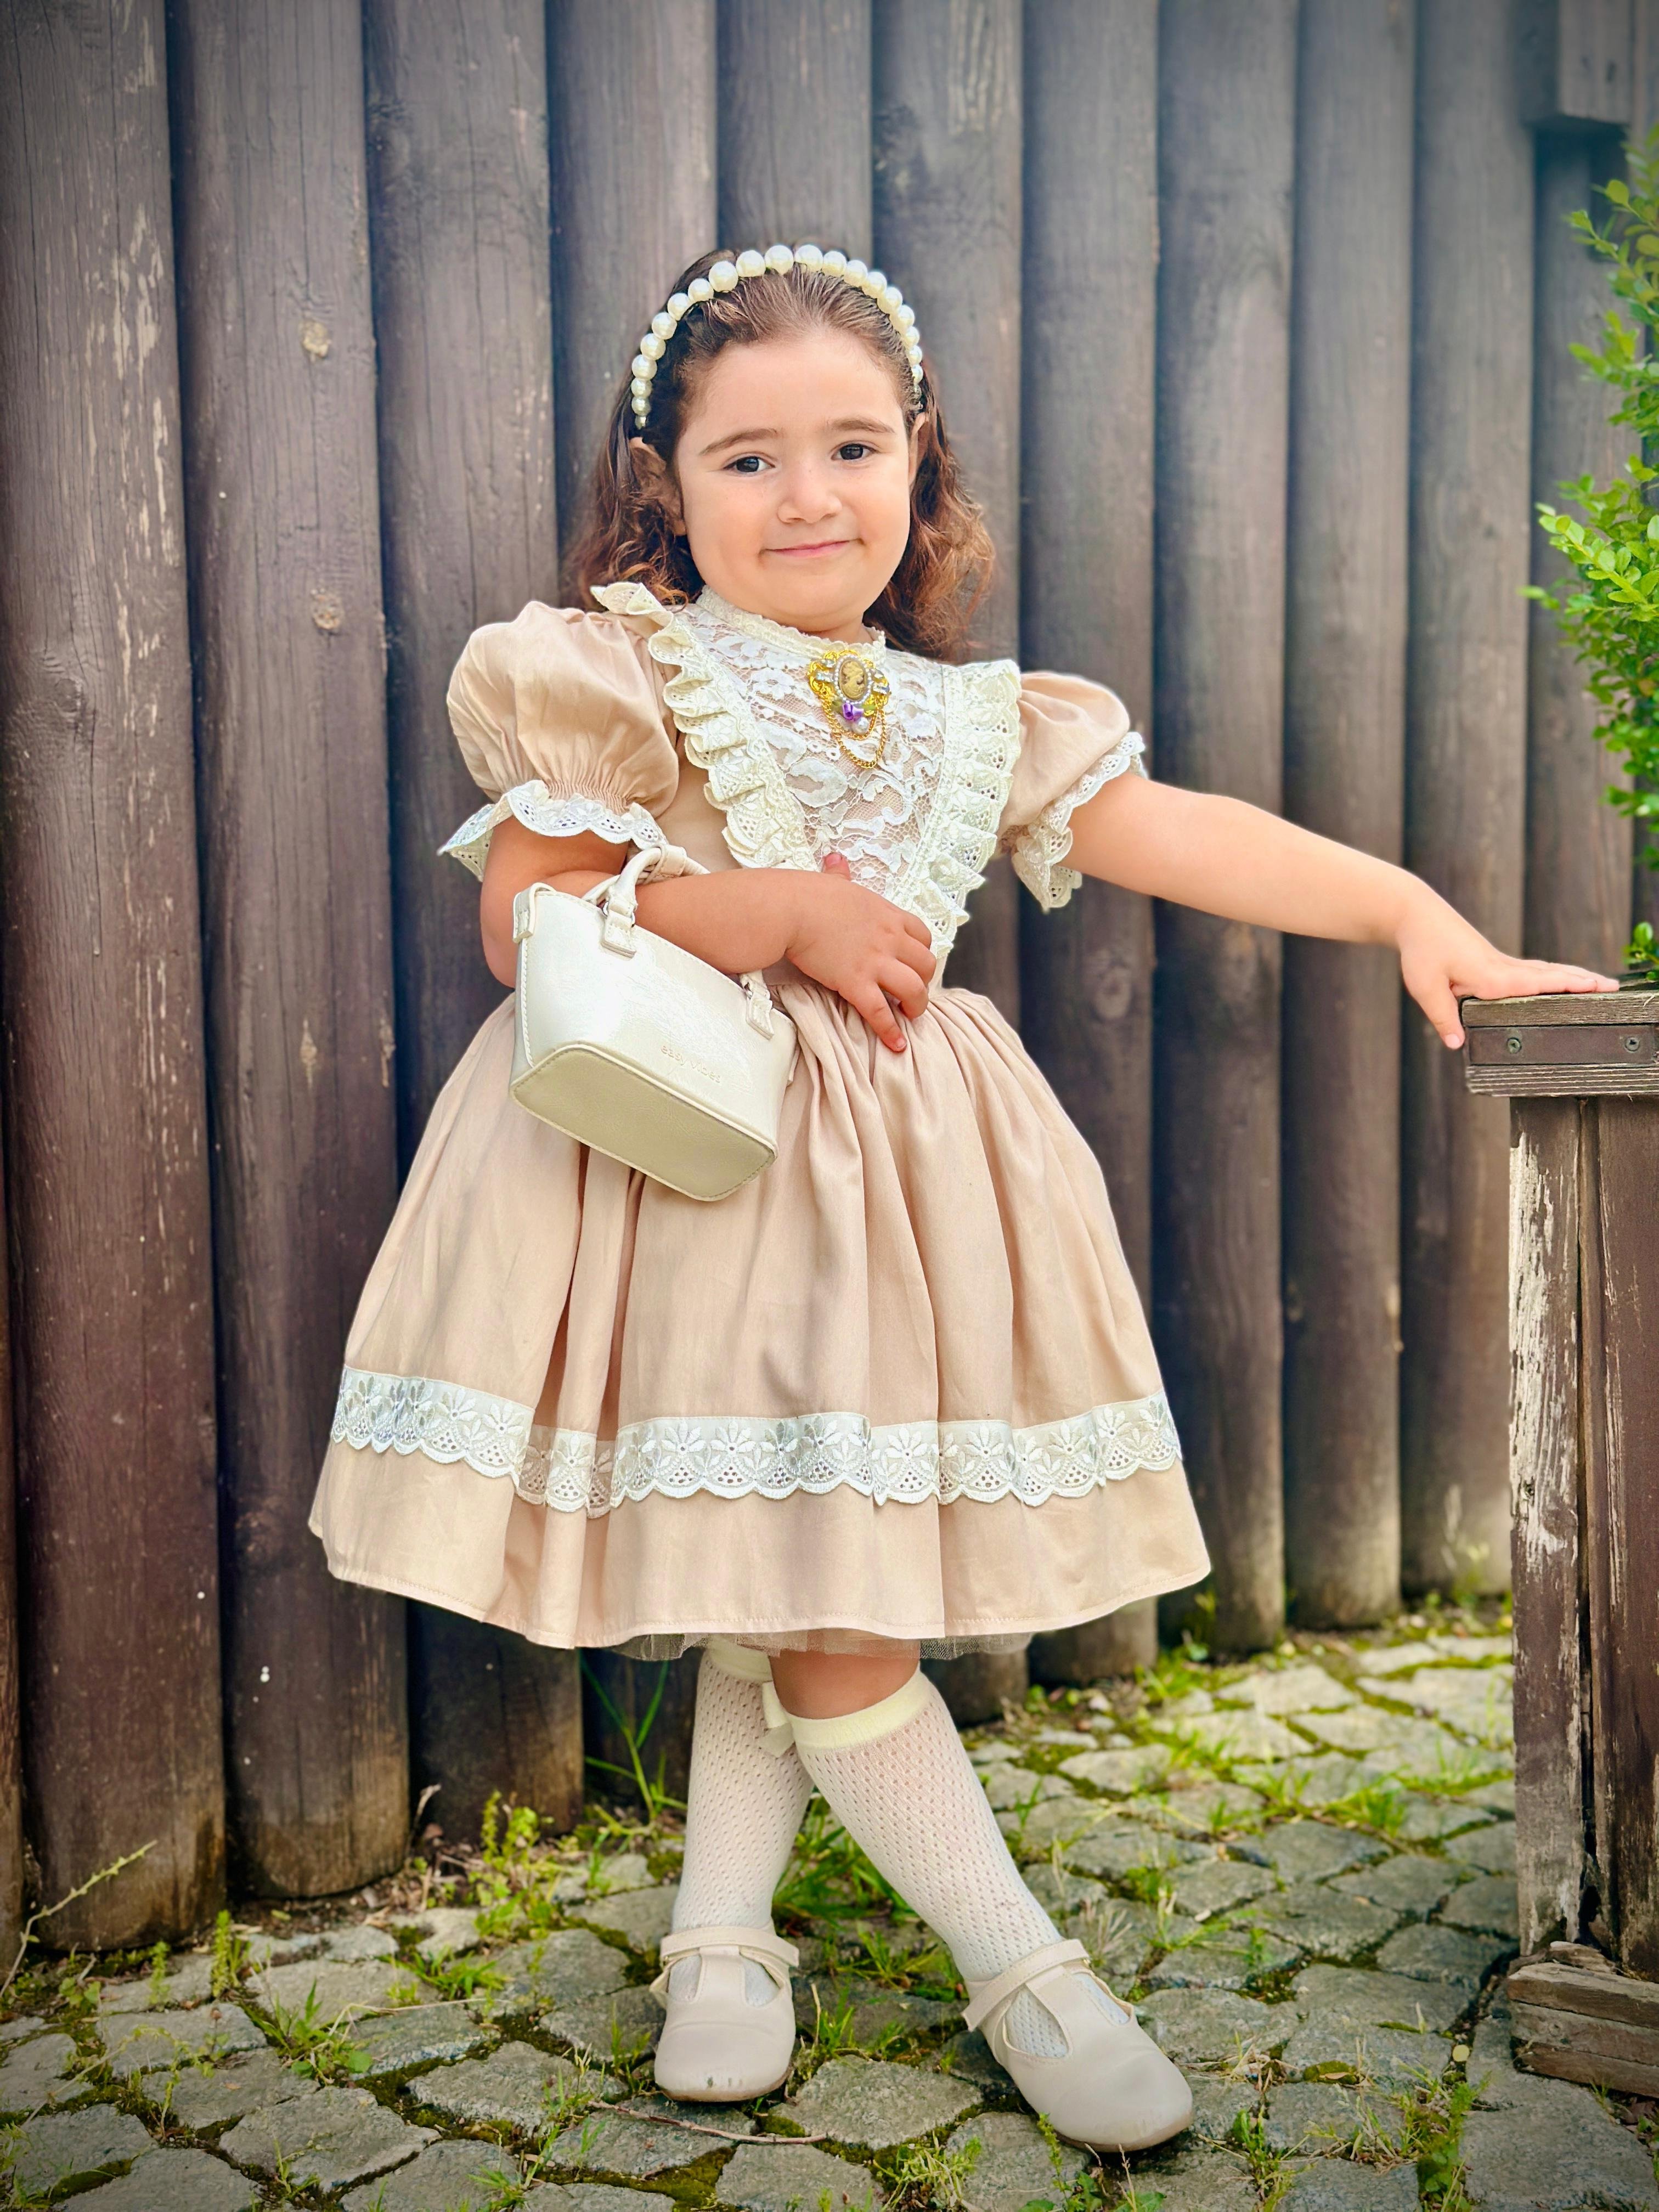 Kapiçino Dantelli Vintage Kız Bebek Elbisesi,Doğum günü,fotoğraf çekim elbise,0-12 Yaş Uygun